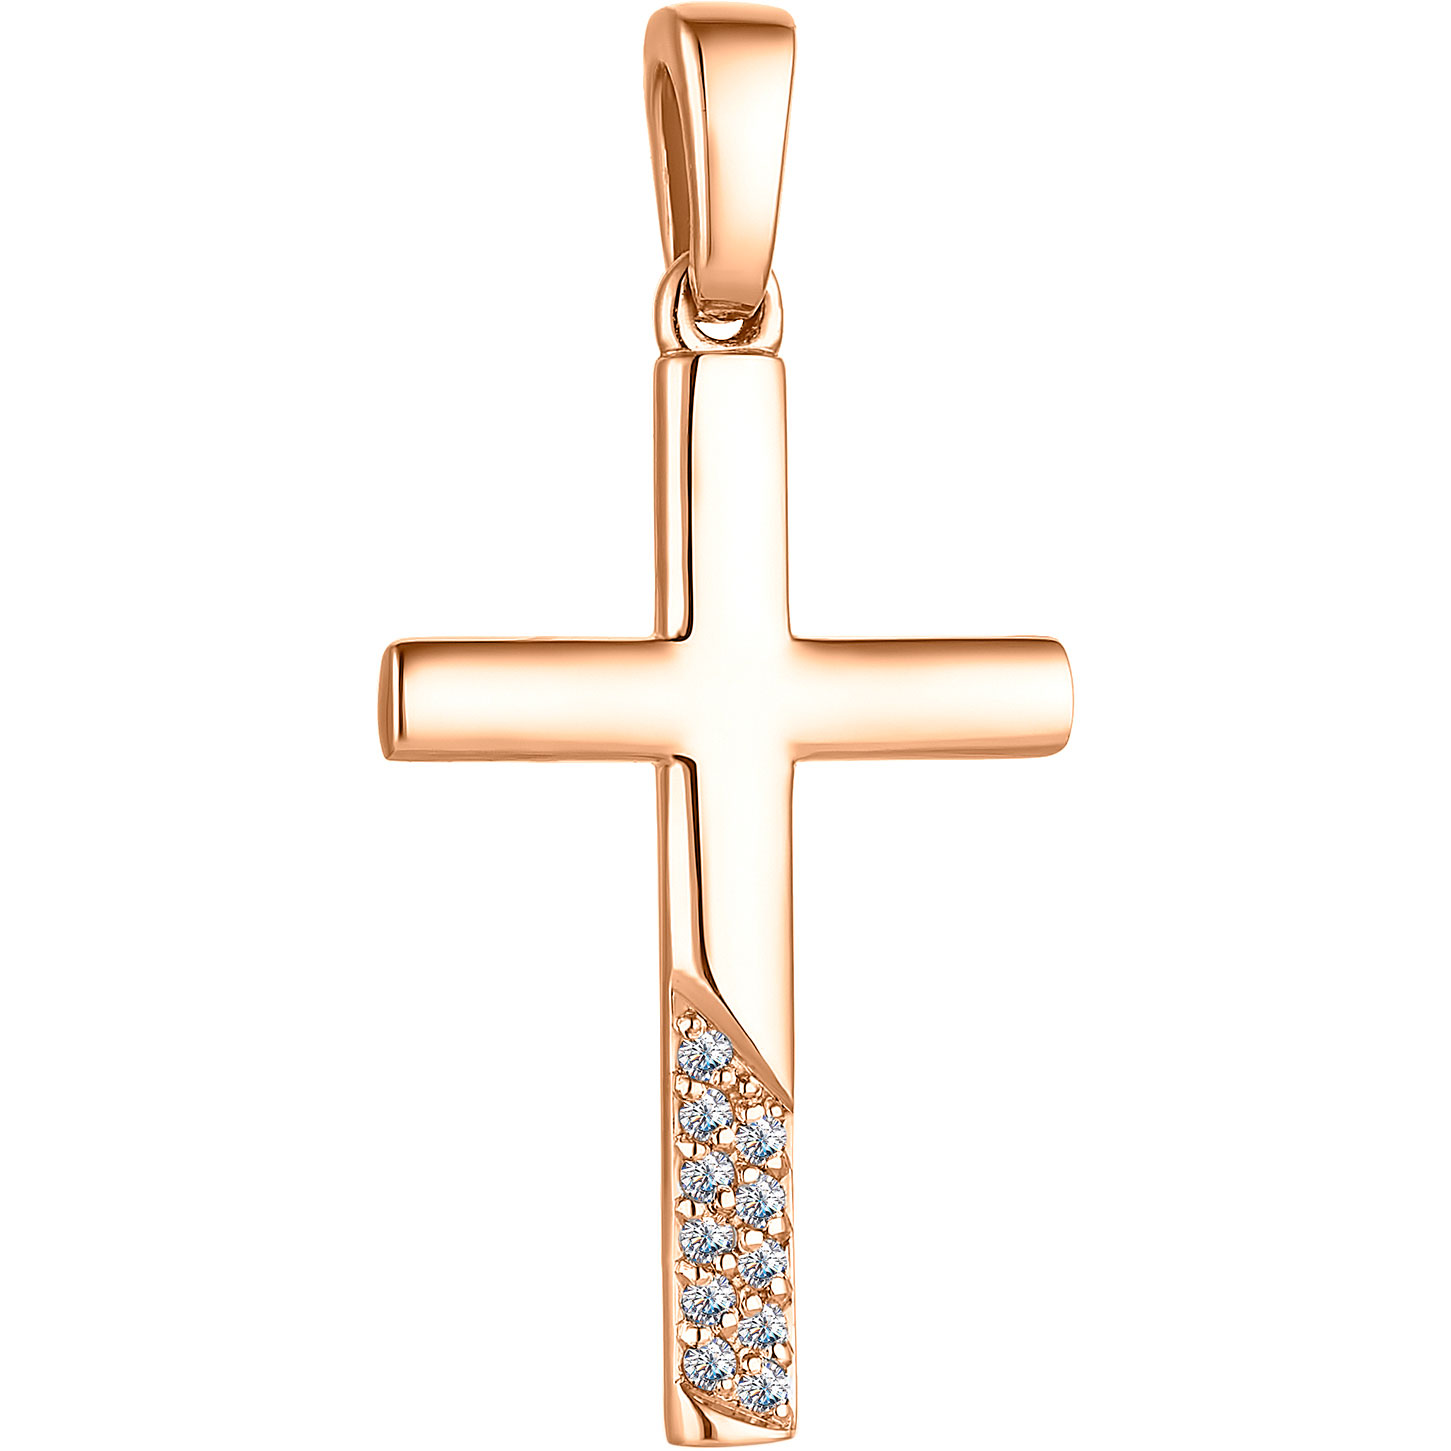 Женский золотой декоративный крестик Алькор 33301-100 с бриллиантами —купить в AllTime.ru — фото